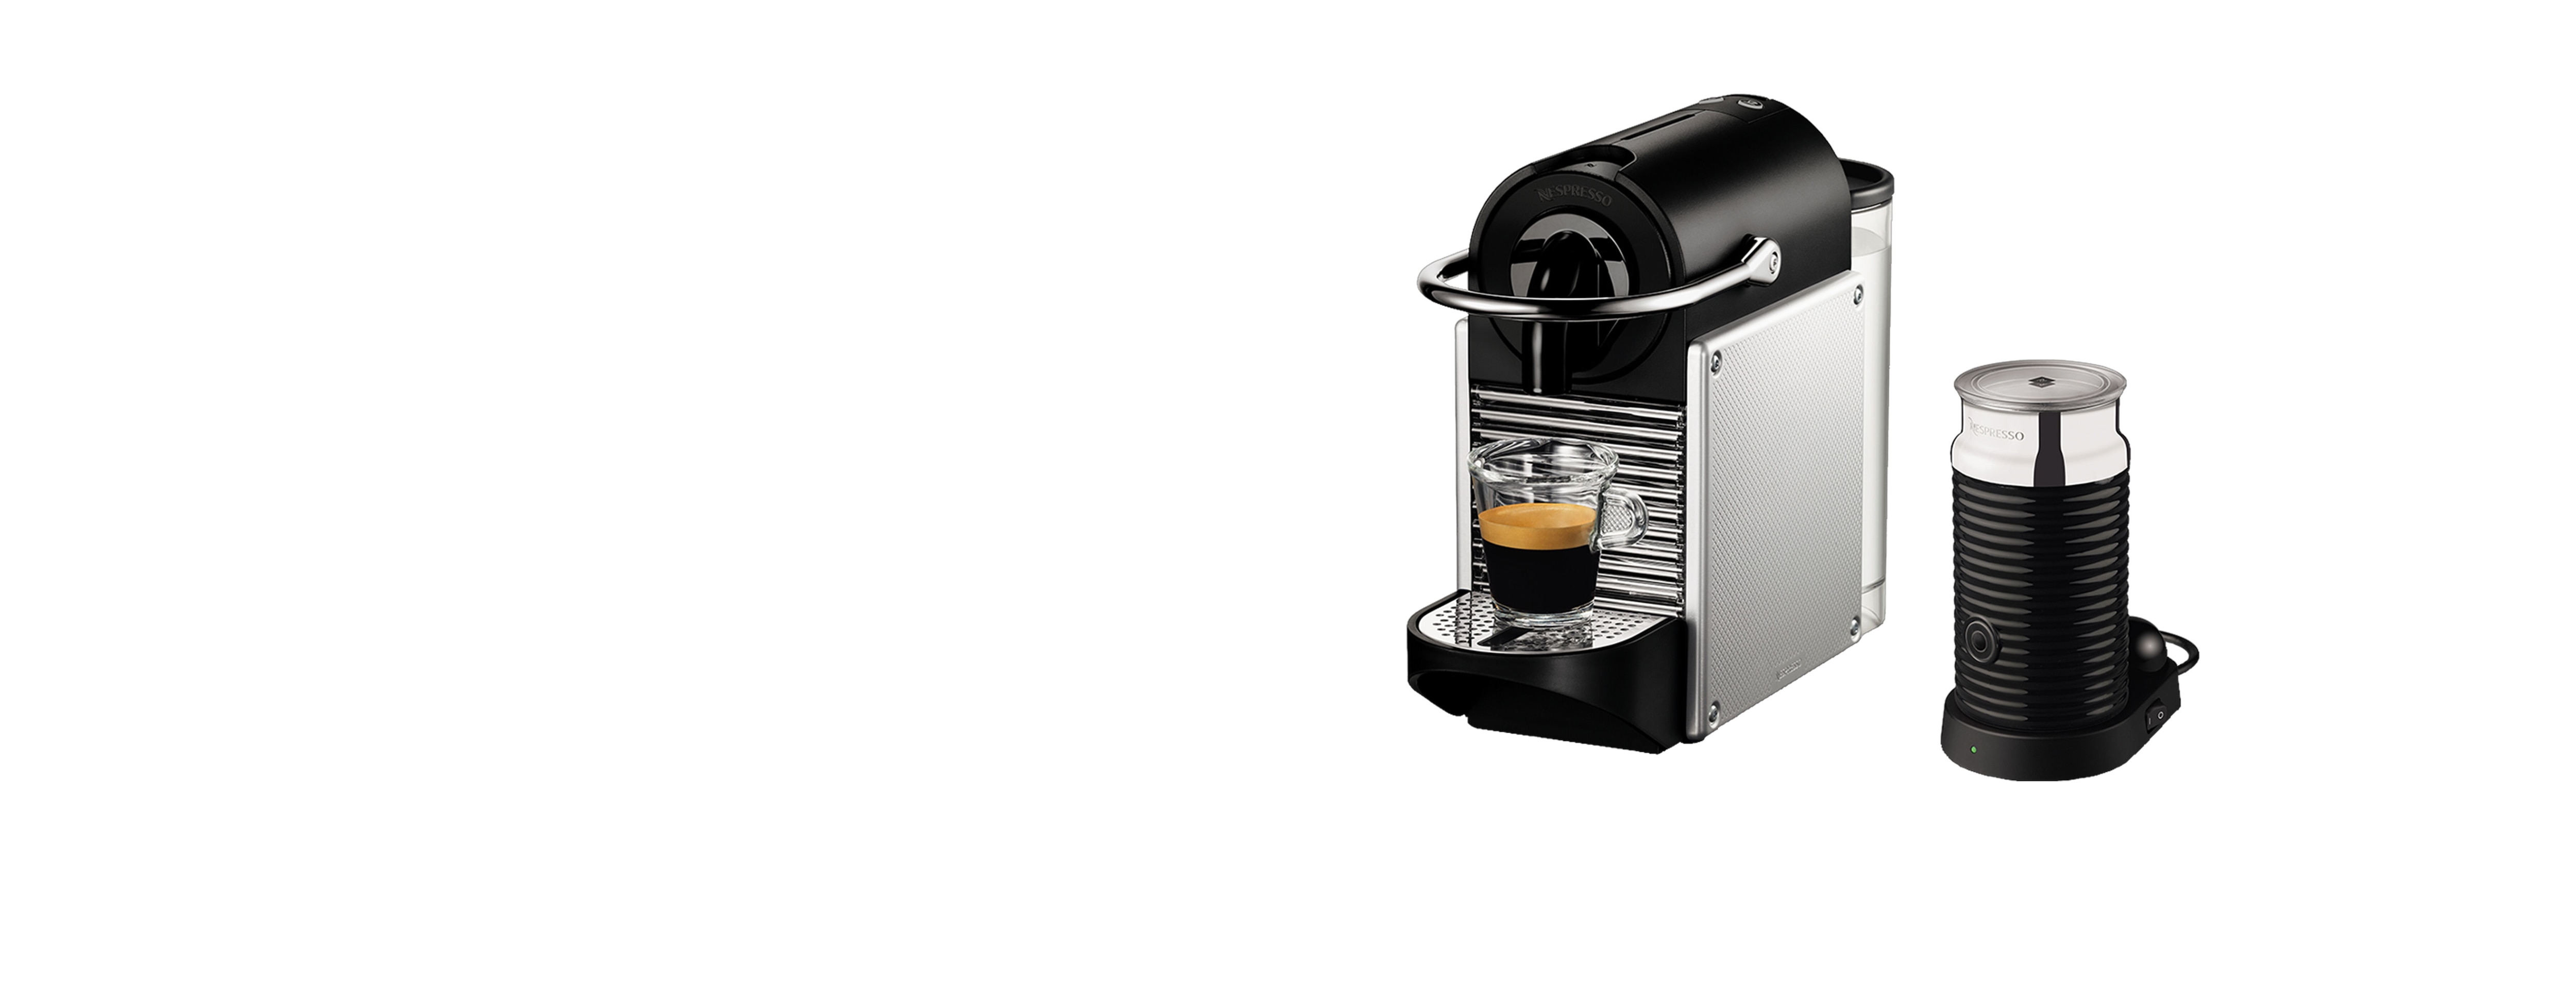  Nespresso BEC430TTN Pixie Espresso Machine, 24 ounces